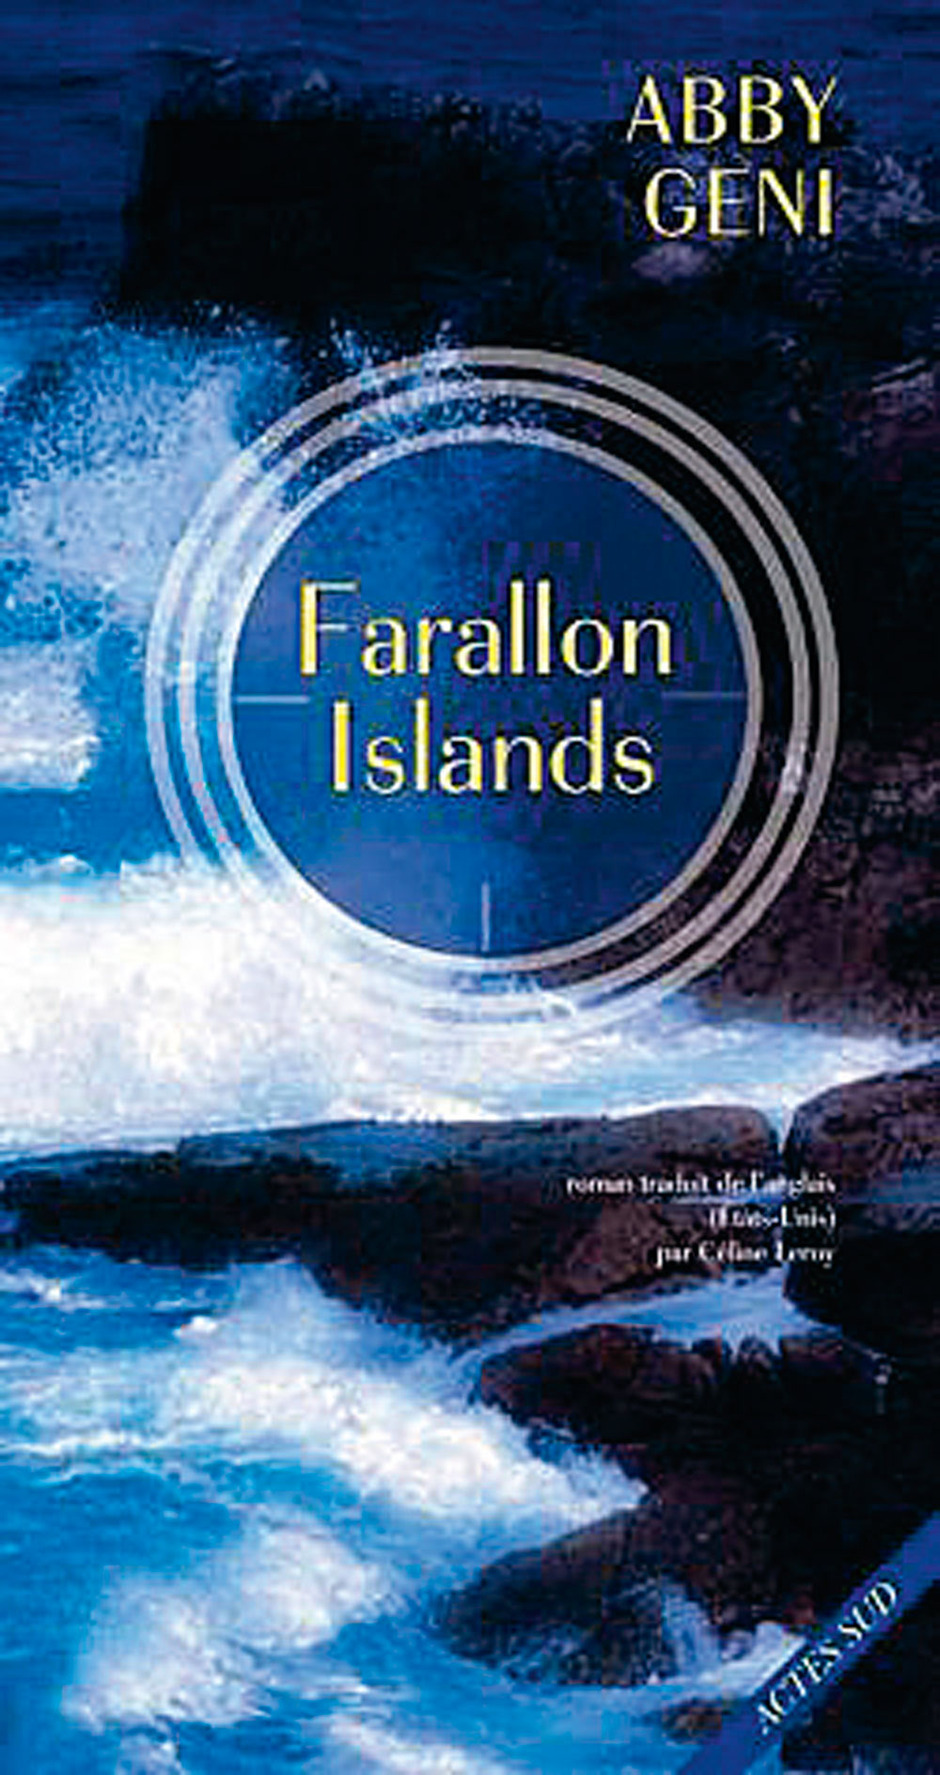 Farallon islands